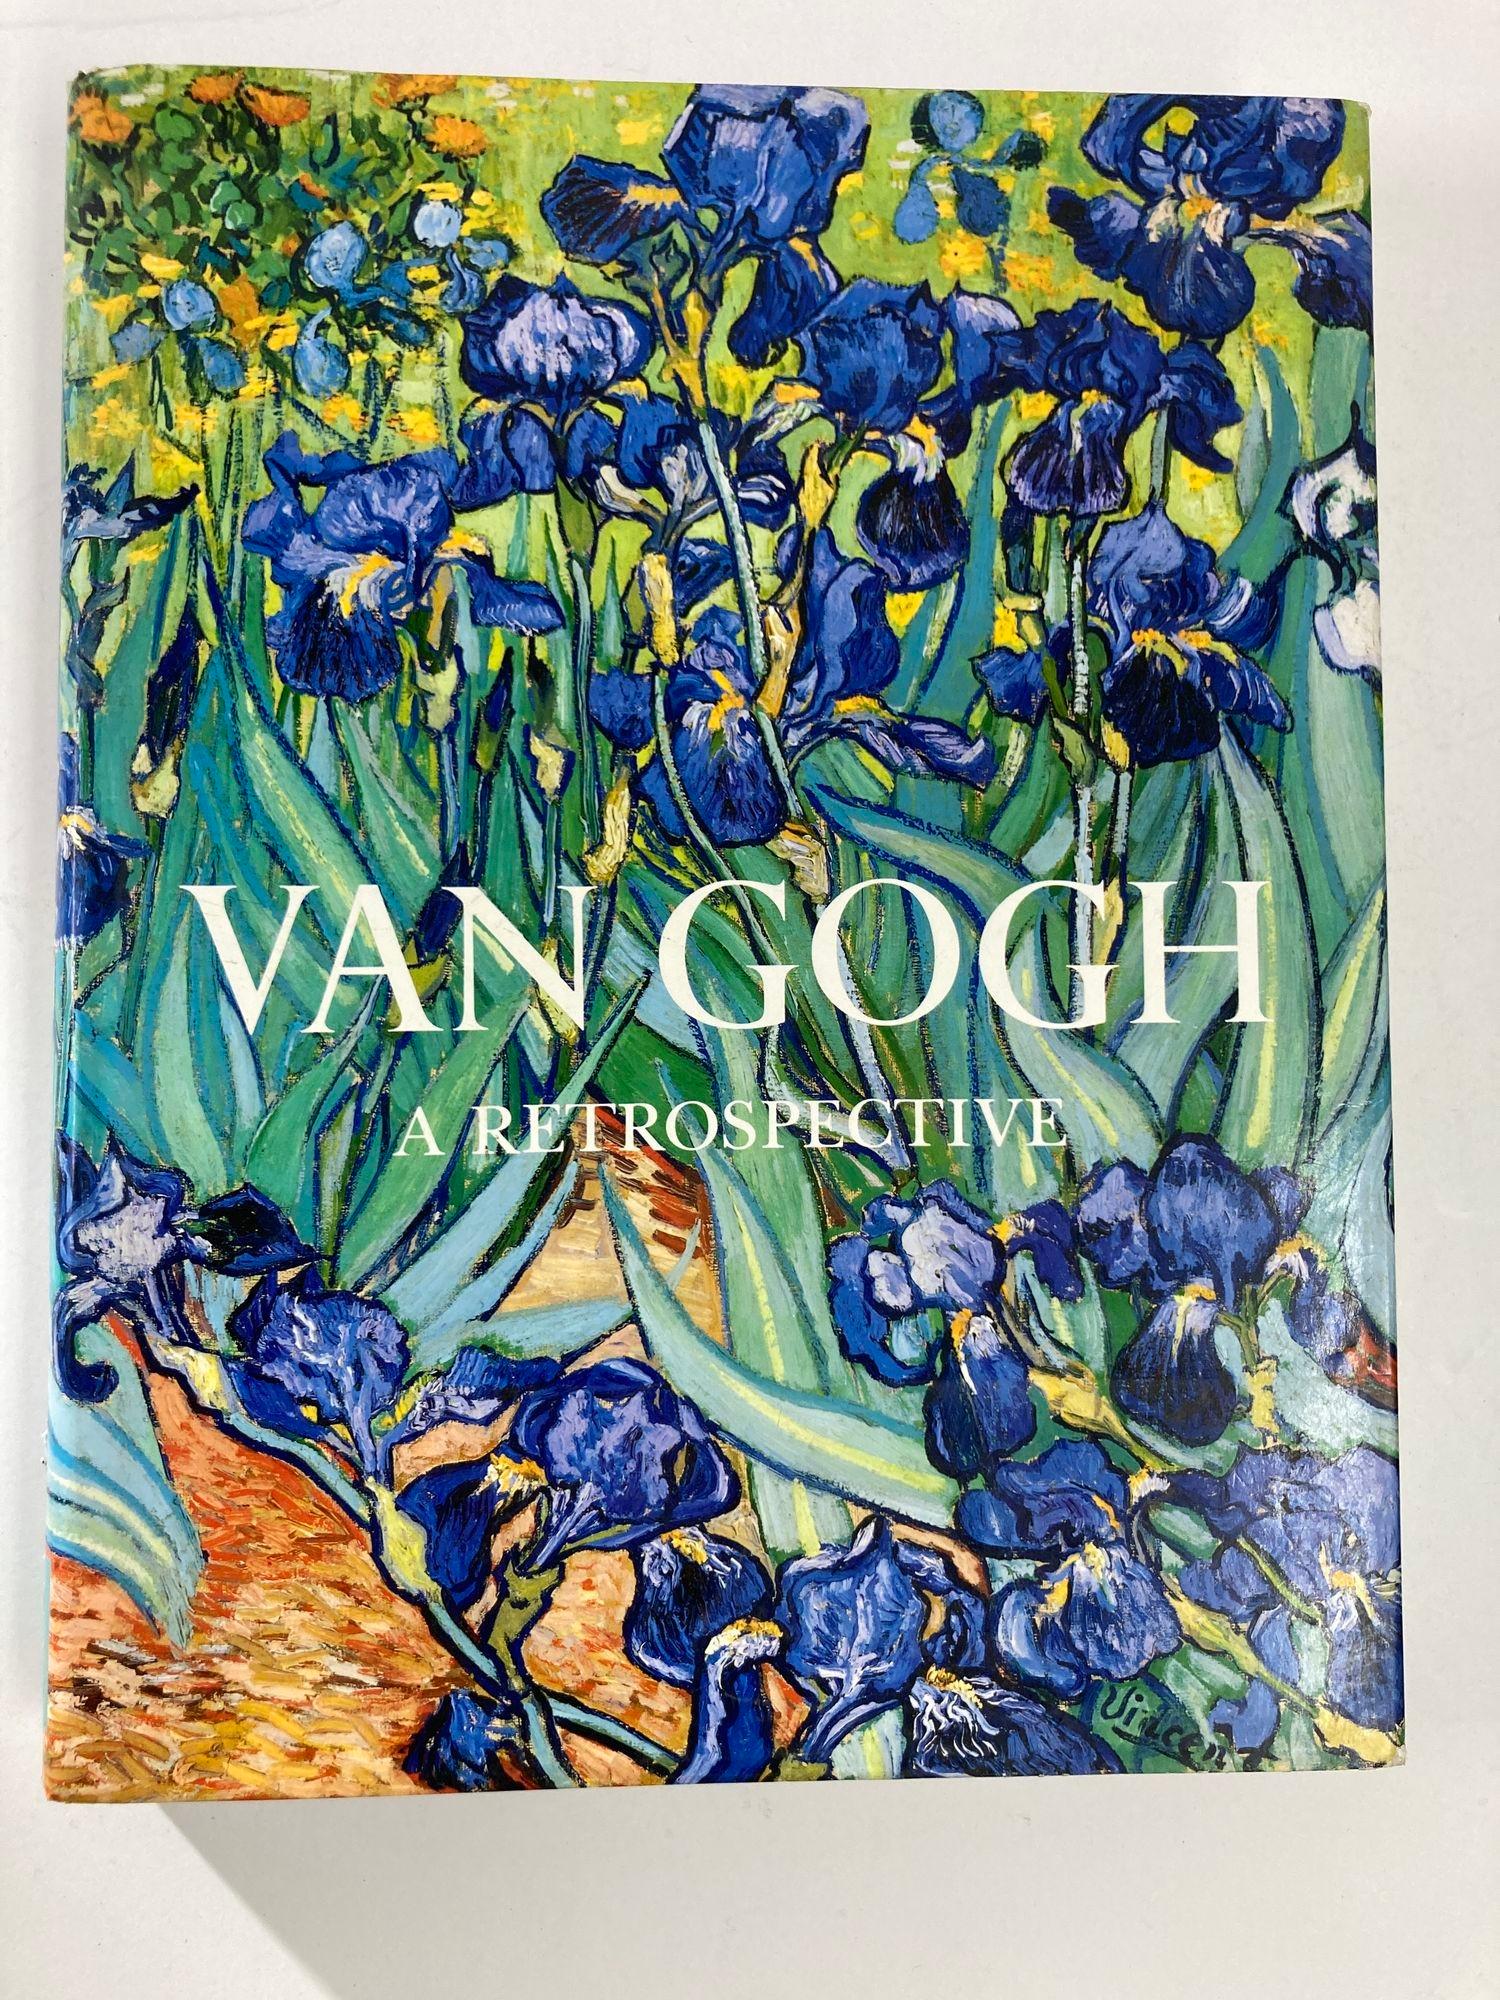 Van Gogh a Retrospective 1986 1ère édition.
Grand livre à couverture rigide et lourde.
New York : Hughes Lauter Levin Associates, 1986. Première édition ; première impression. Couverture rigide. 
Très bon dans une jaquette très bonne.
Dimensions :